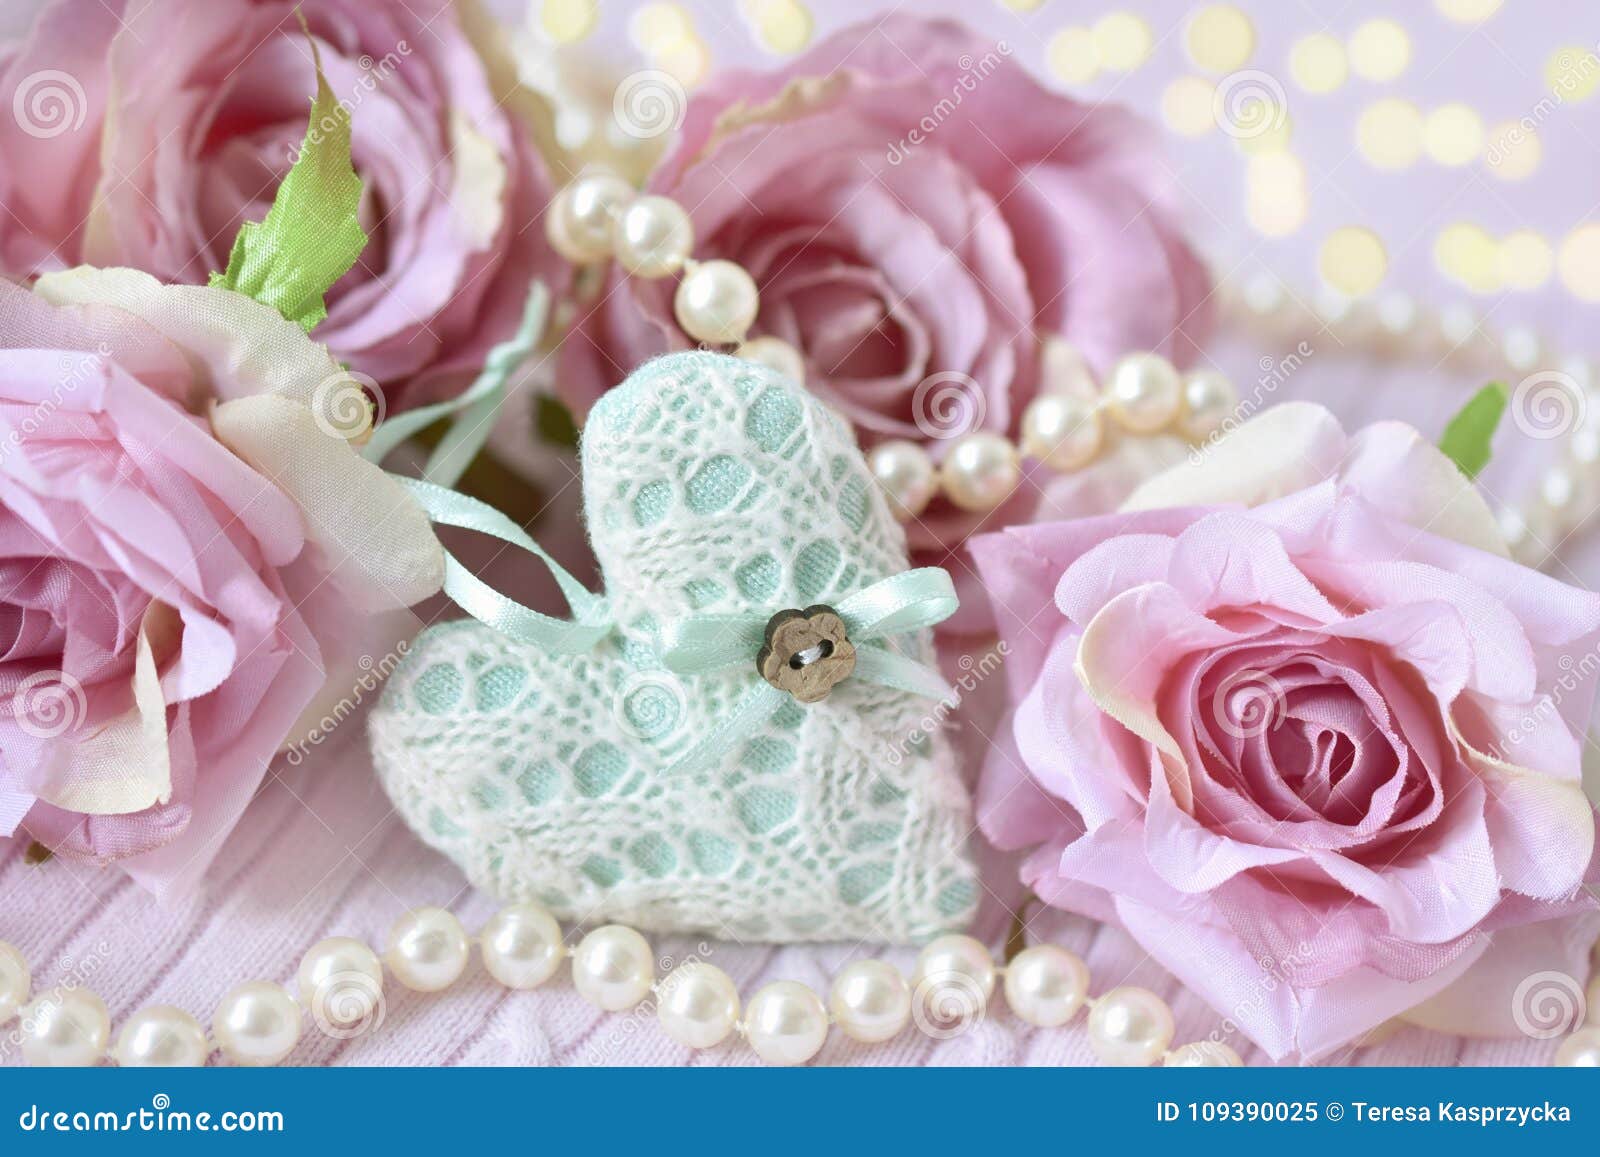 Herz Rosen Und Perlen Als Liebessymbole Stockbild Bild Von Rosen Perlen